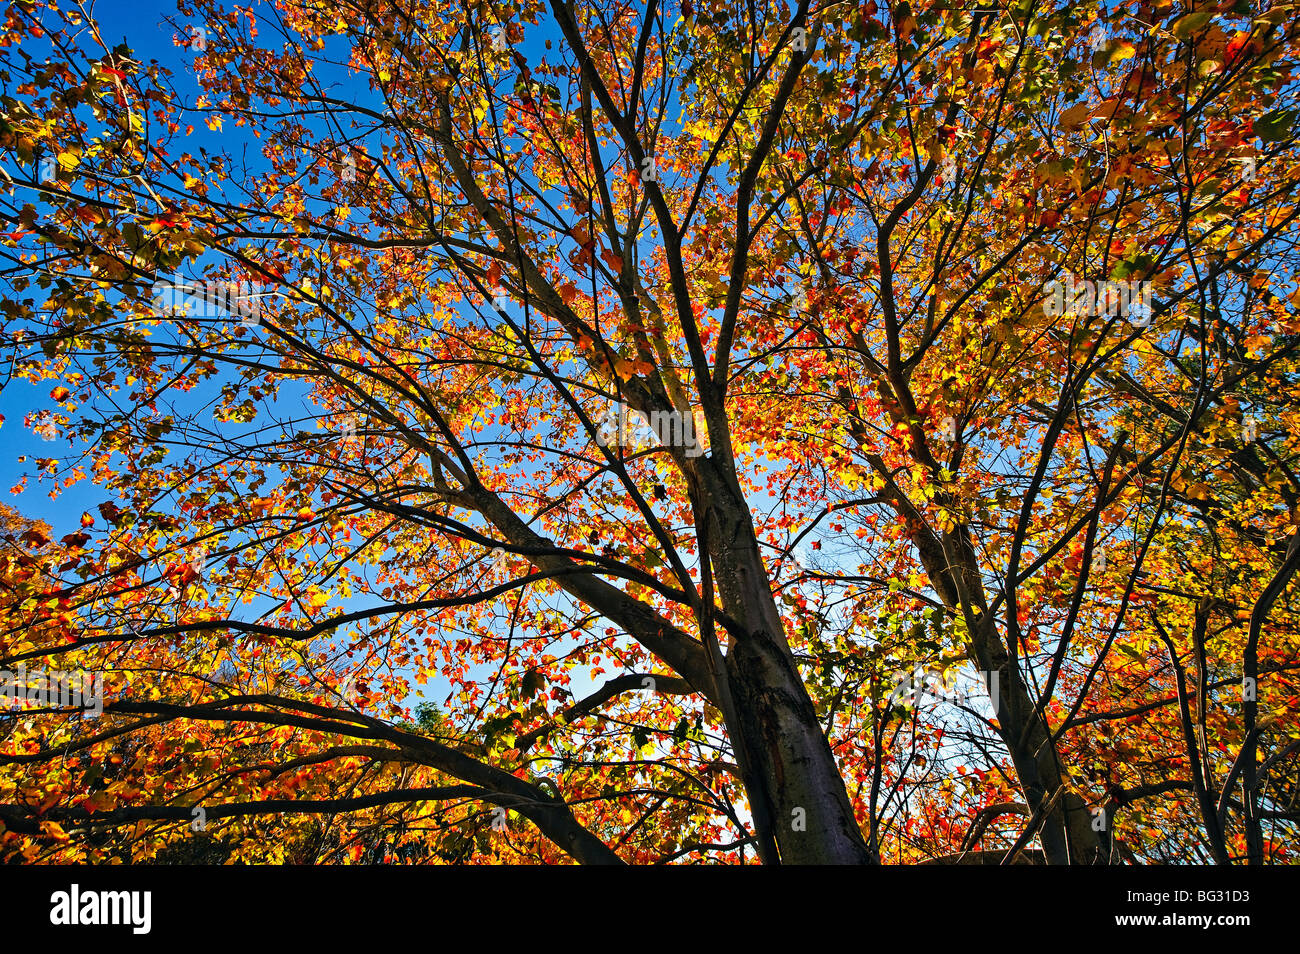 Autumn tree and foliage, Connecticut, USA Stock Photo